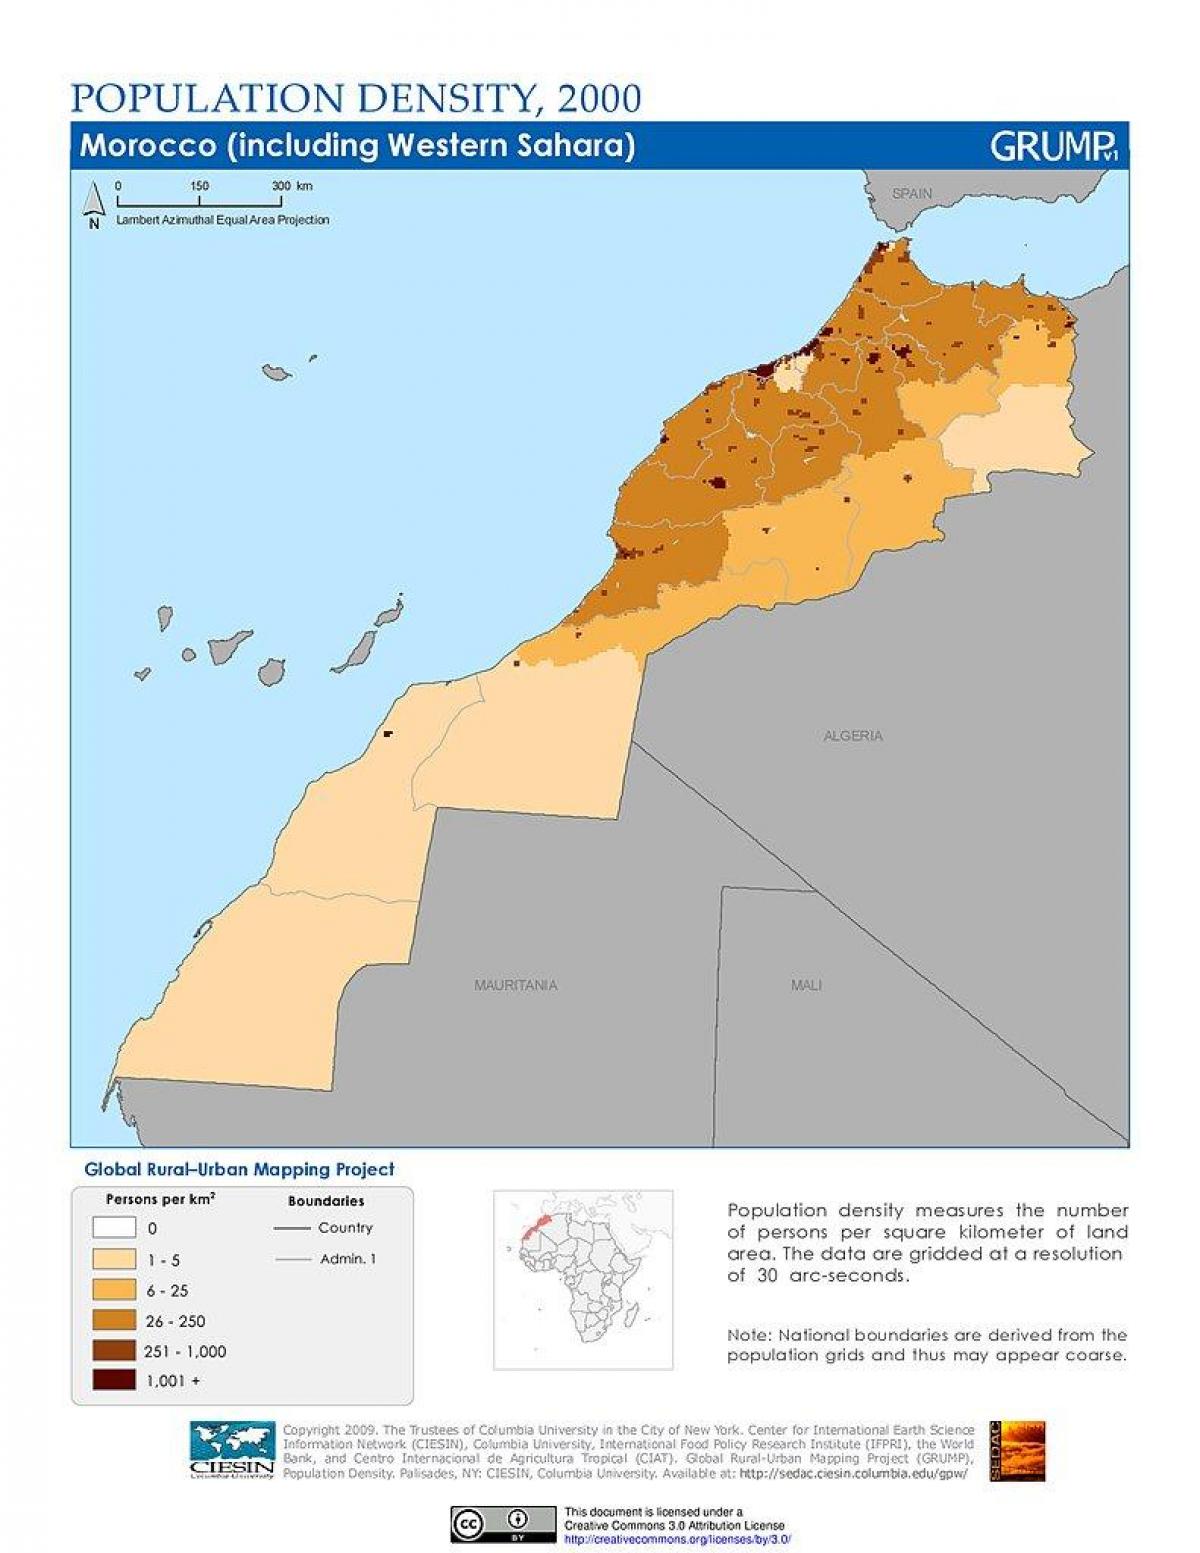 Mapa de densidad de Marruecos